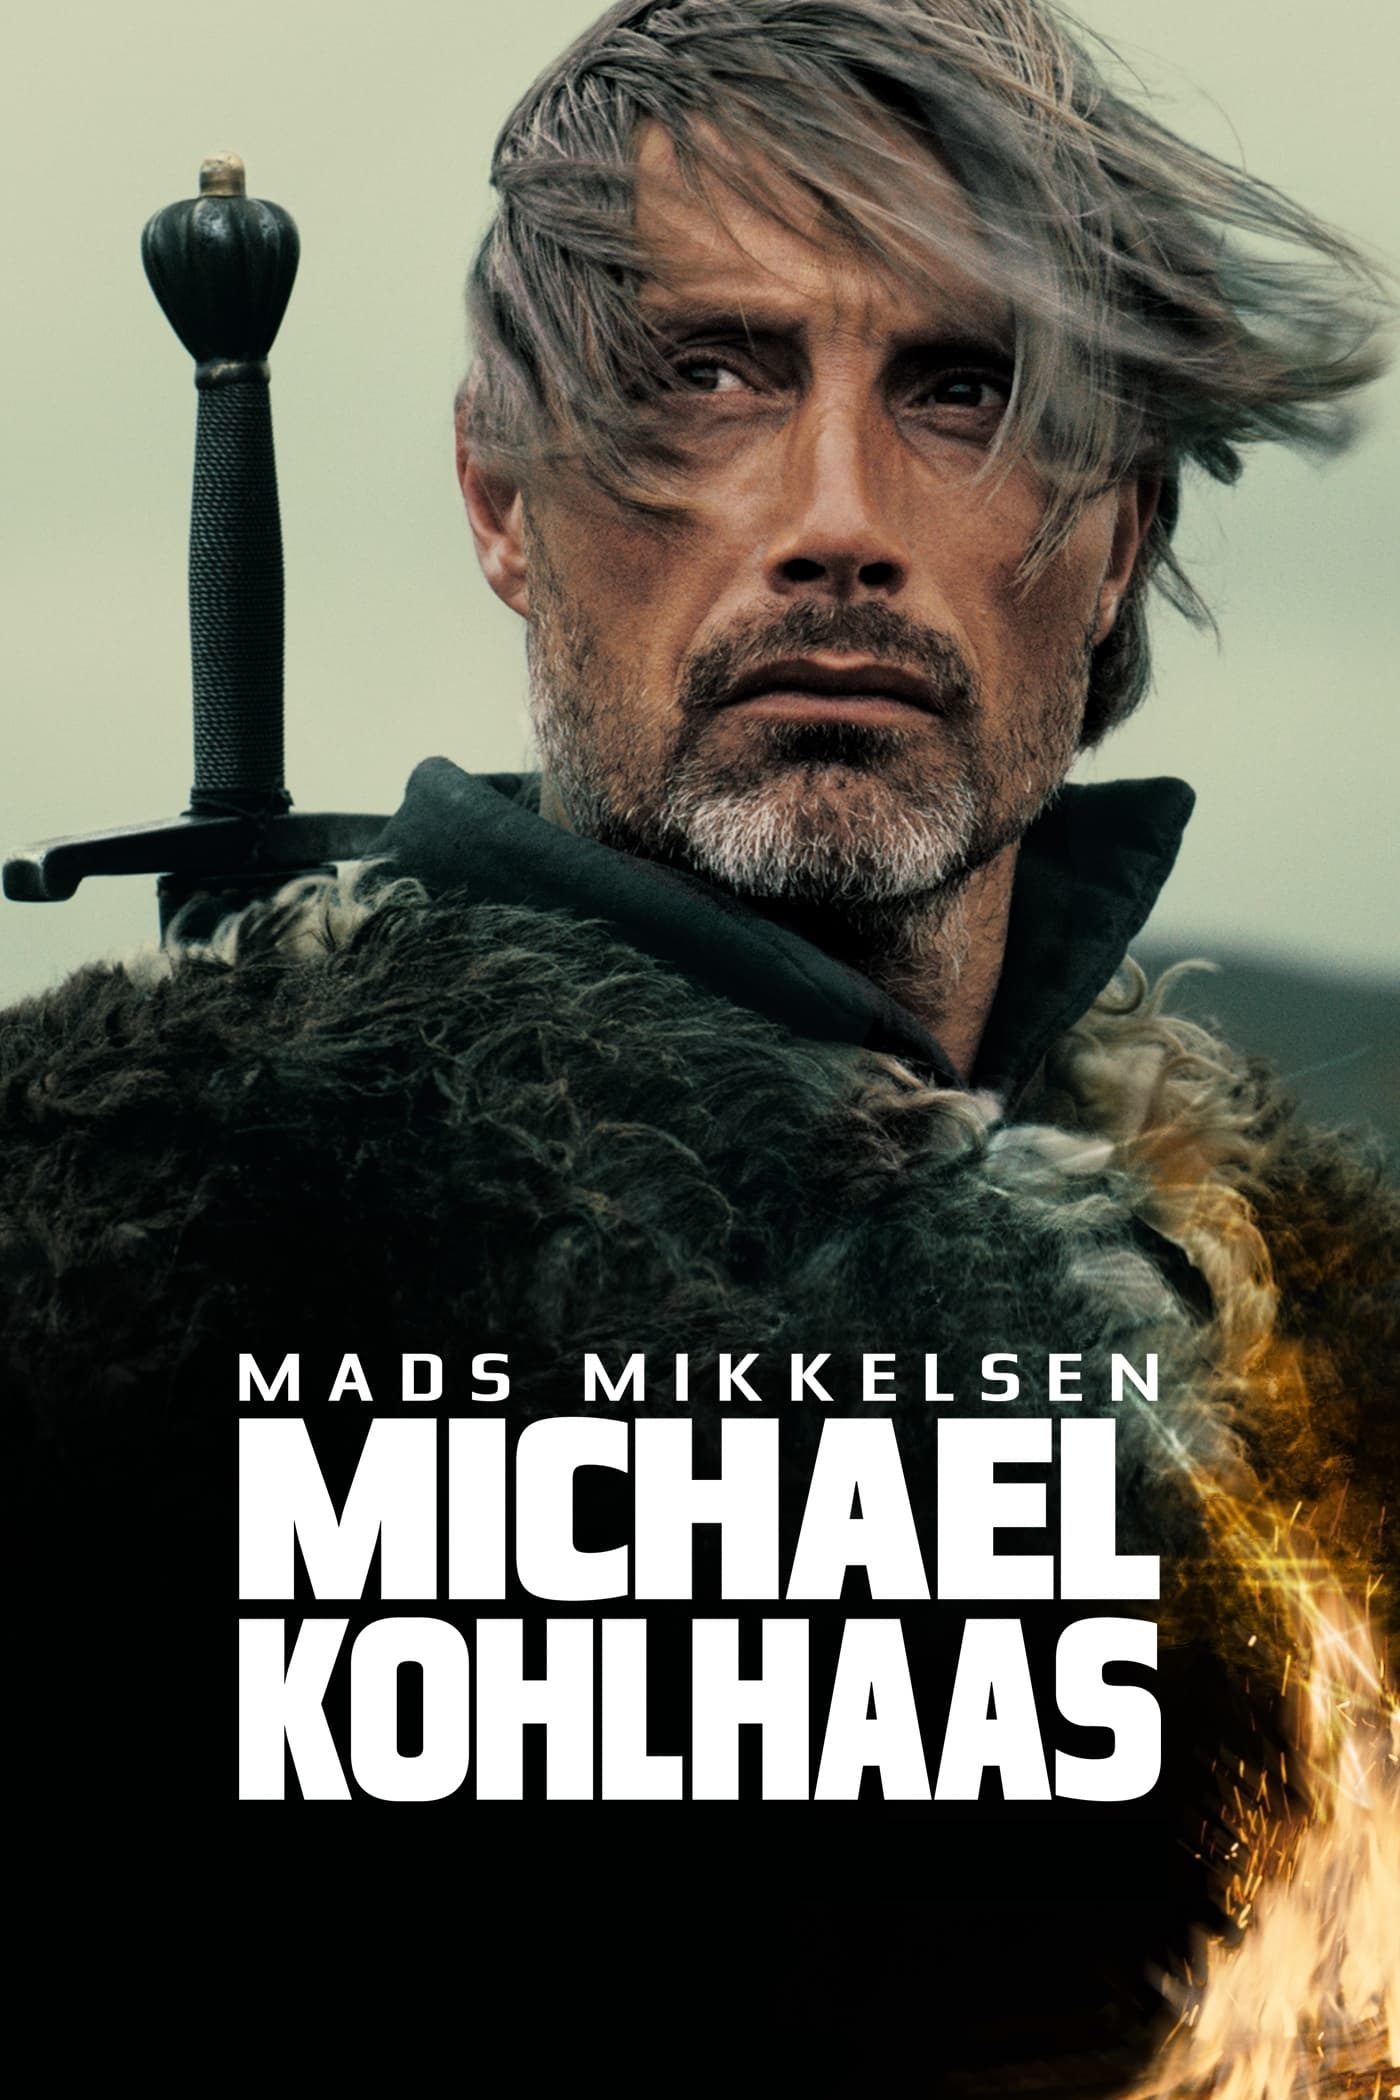 Michael Kohlhaas [Sub-ITA] (2013)